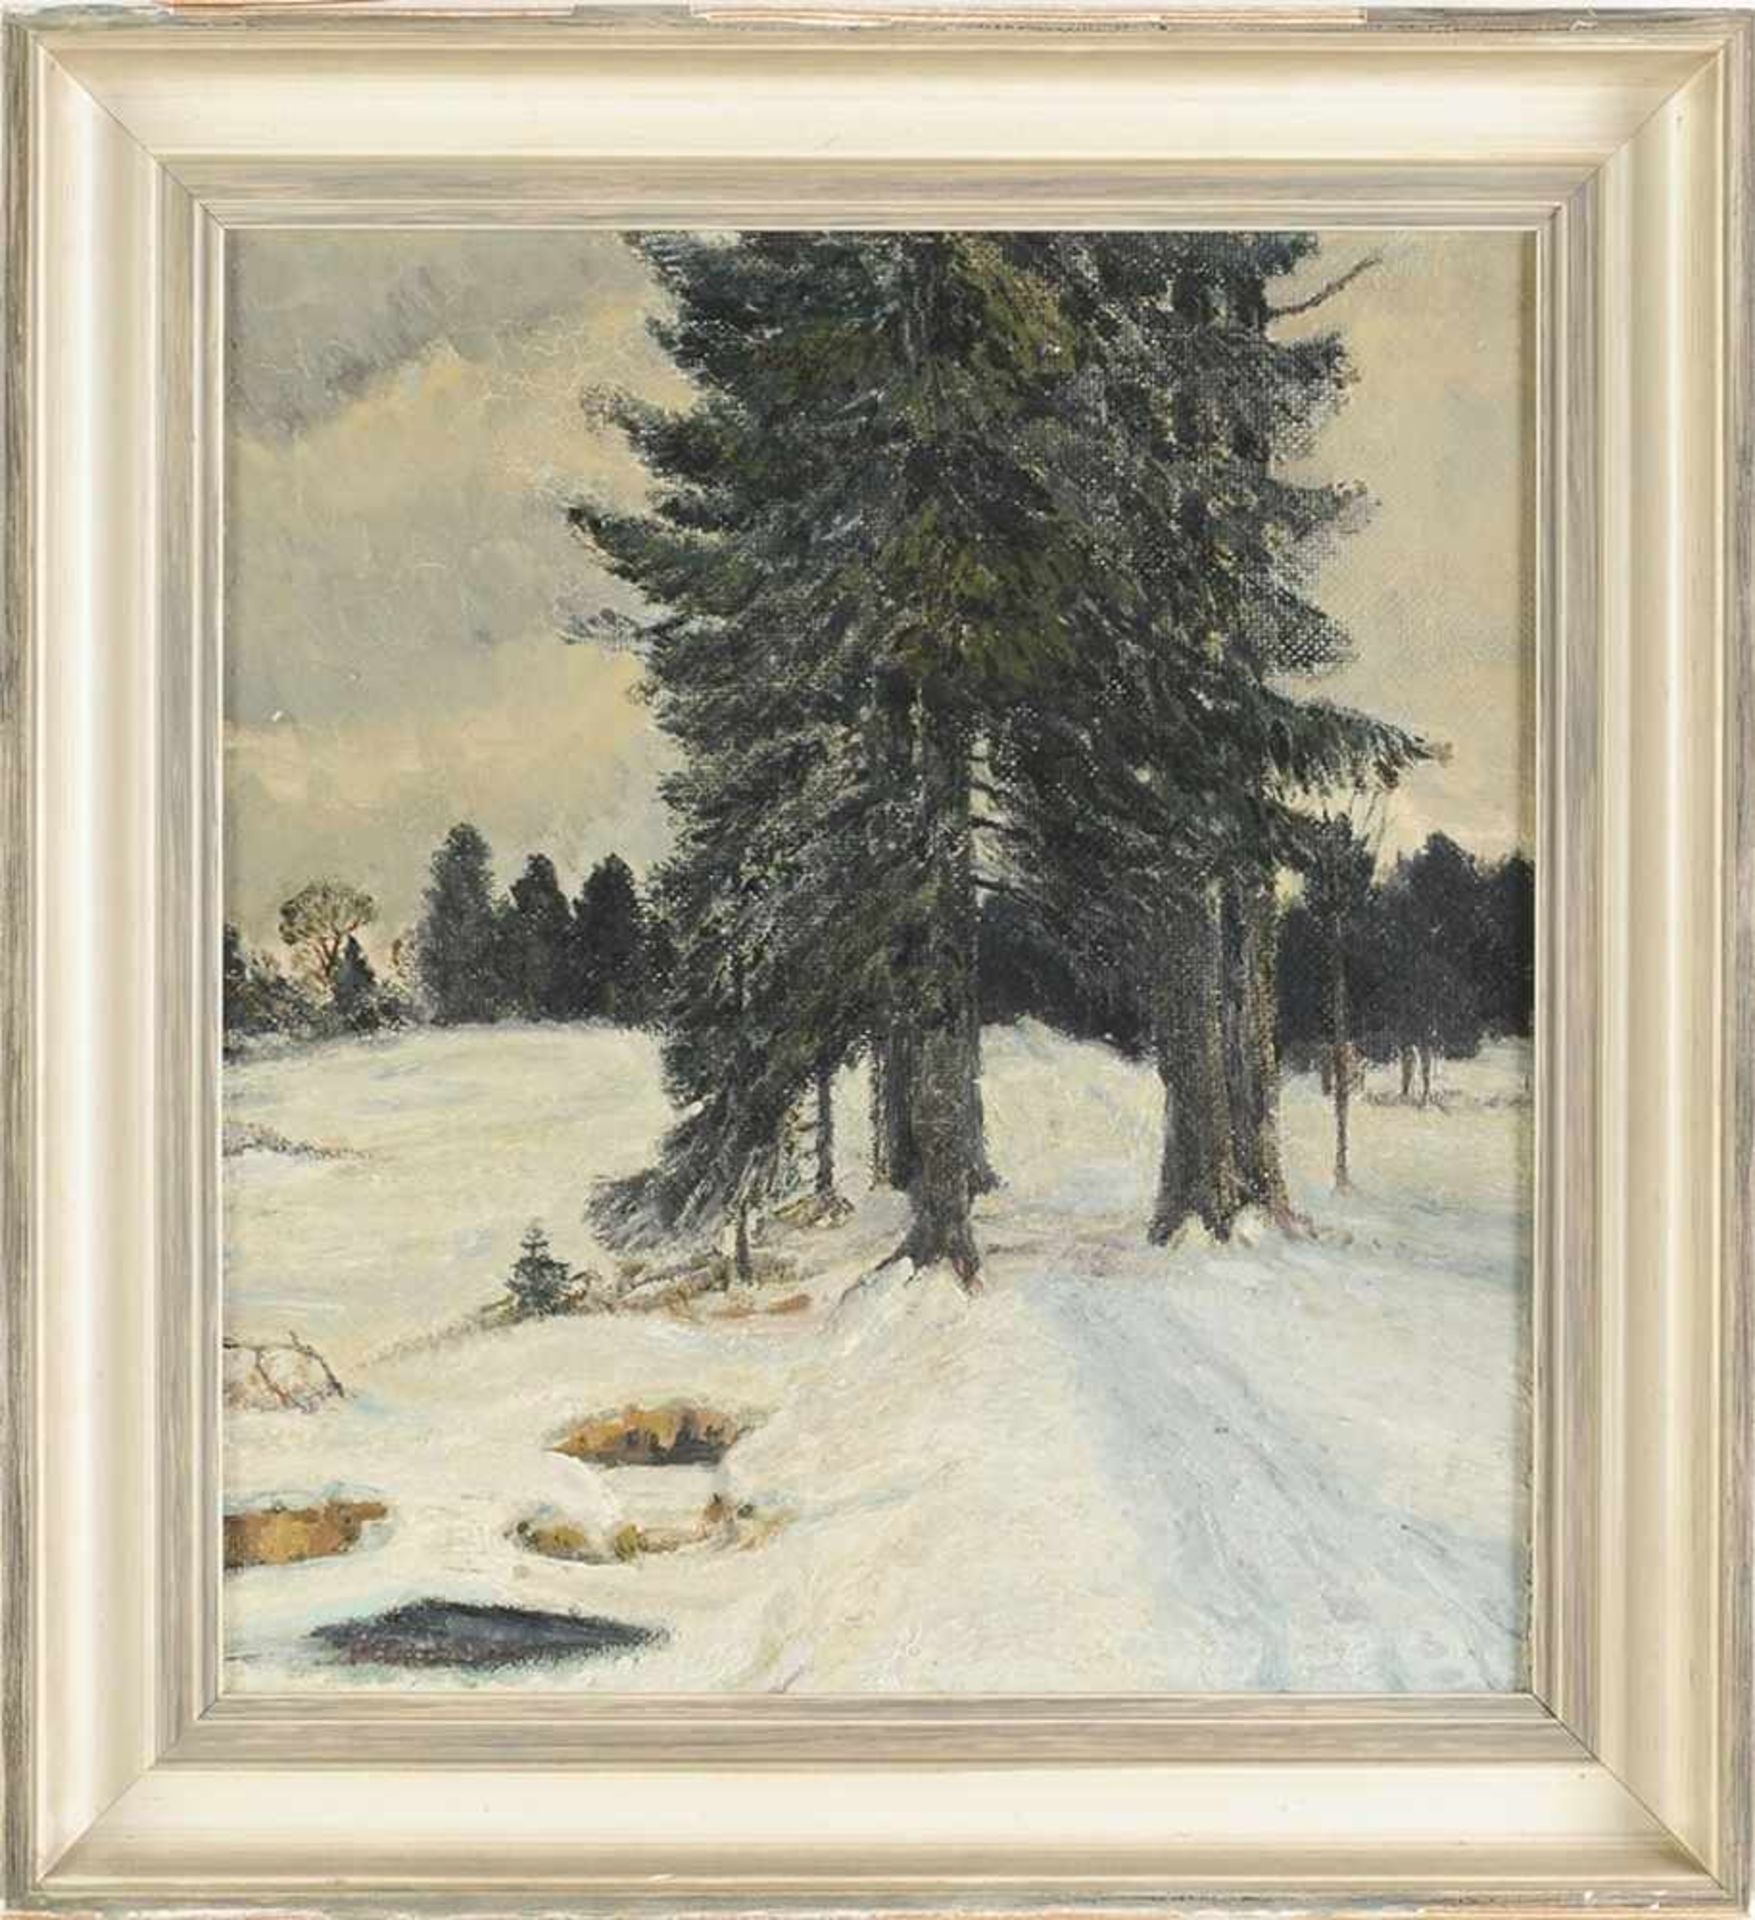 Geisbilsch, P.(Deutscher Maler, M. 20. Jh.) Öl/Hartfaser. Winterlandschaft mit Baumgruppe vor